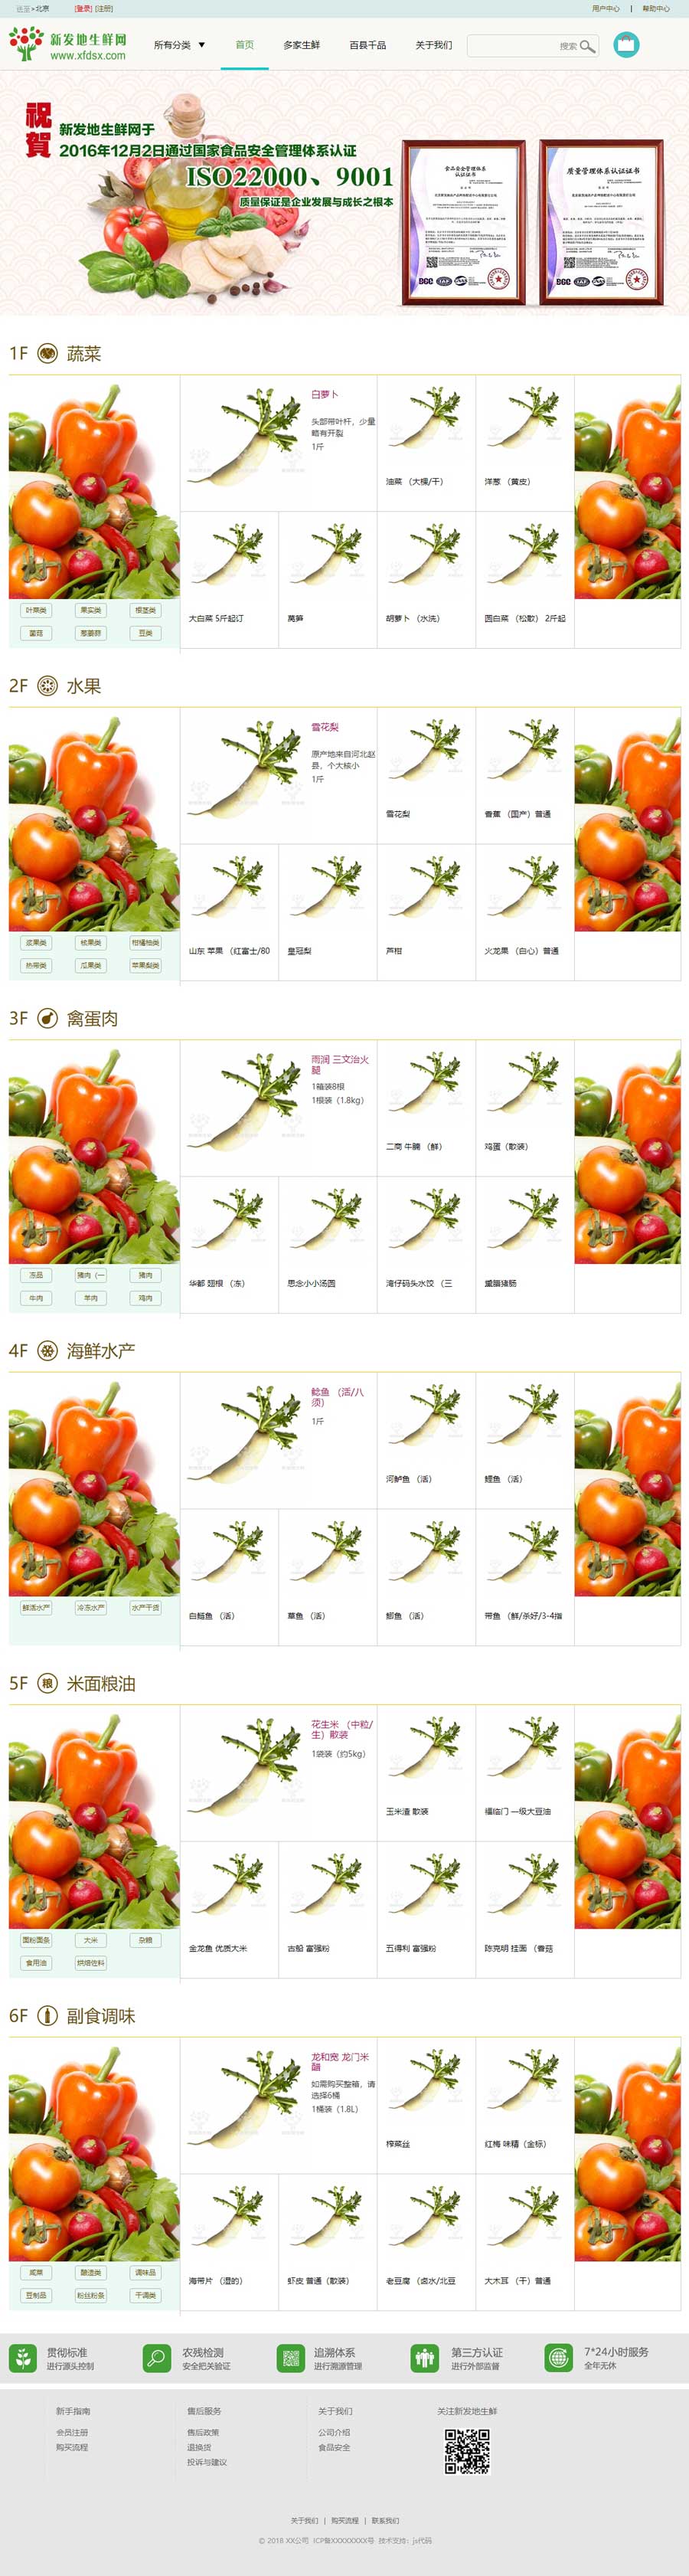 简洁大气新鲜果蔬农副产品商城网站模板